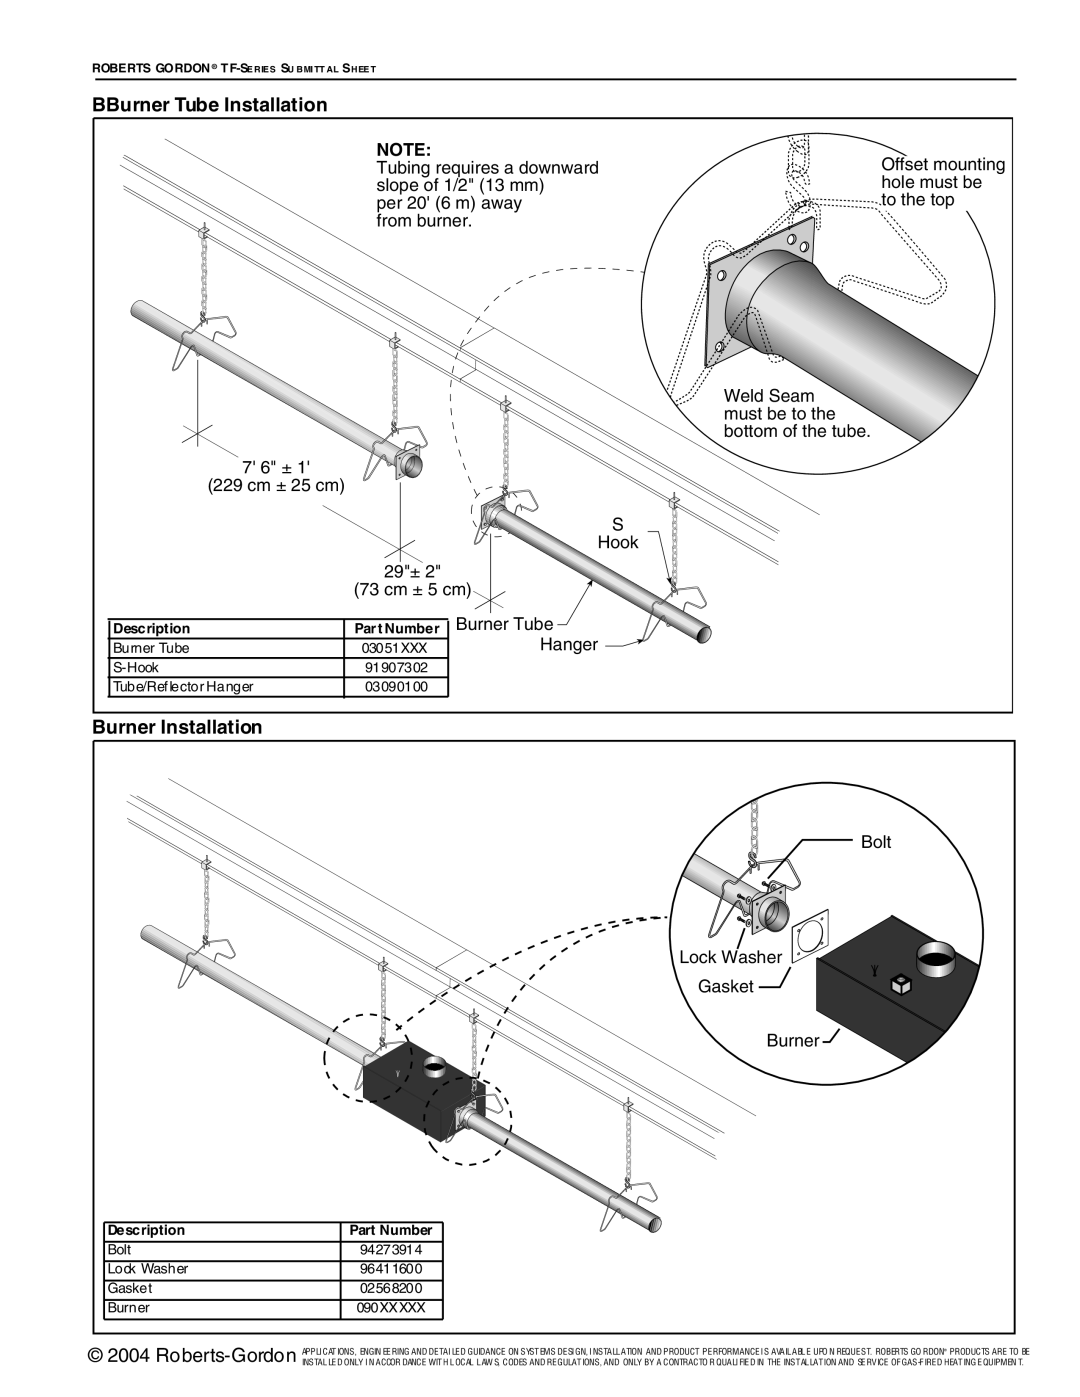 Roberts Gorden TF-Series service manual BBurner Tube Installation, Burner Installation 